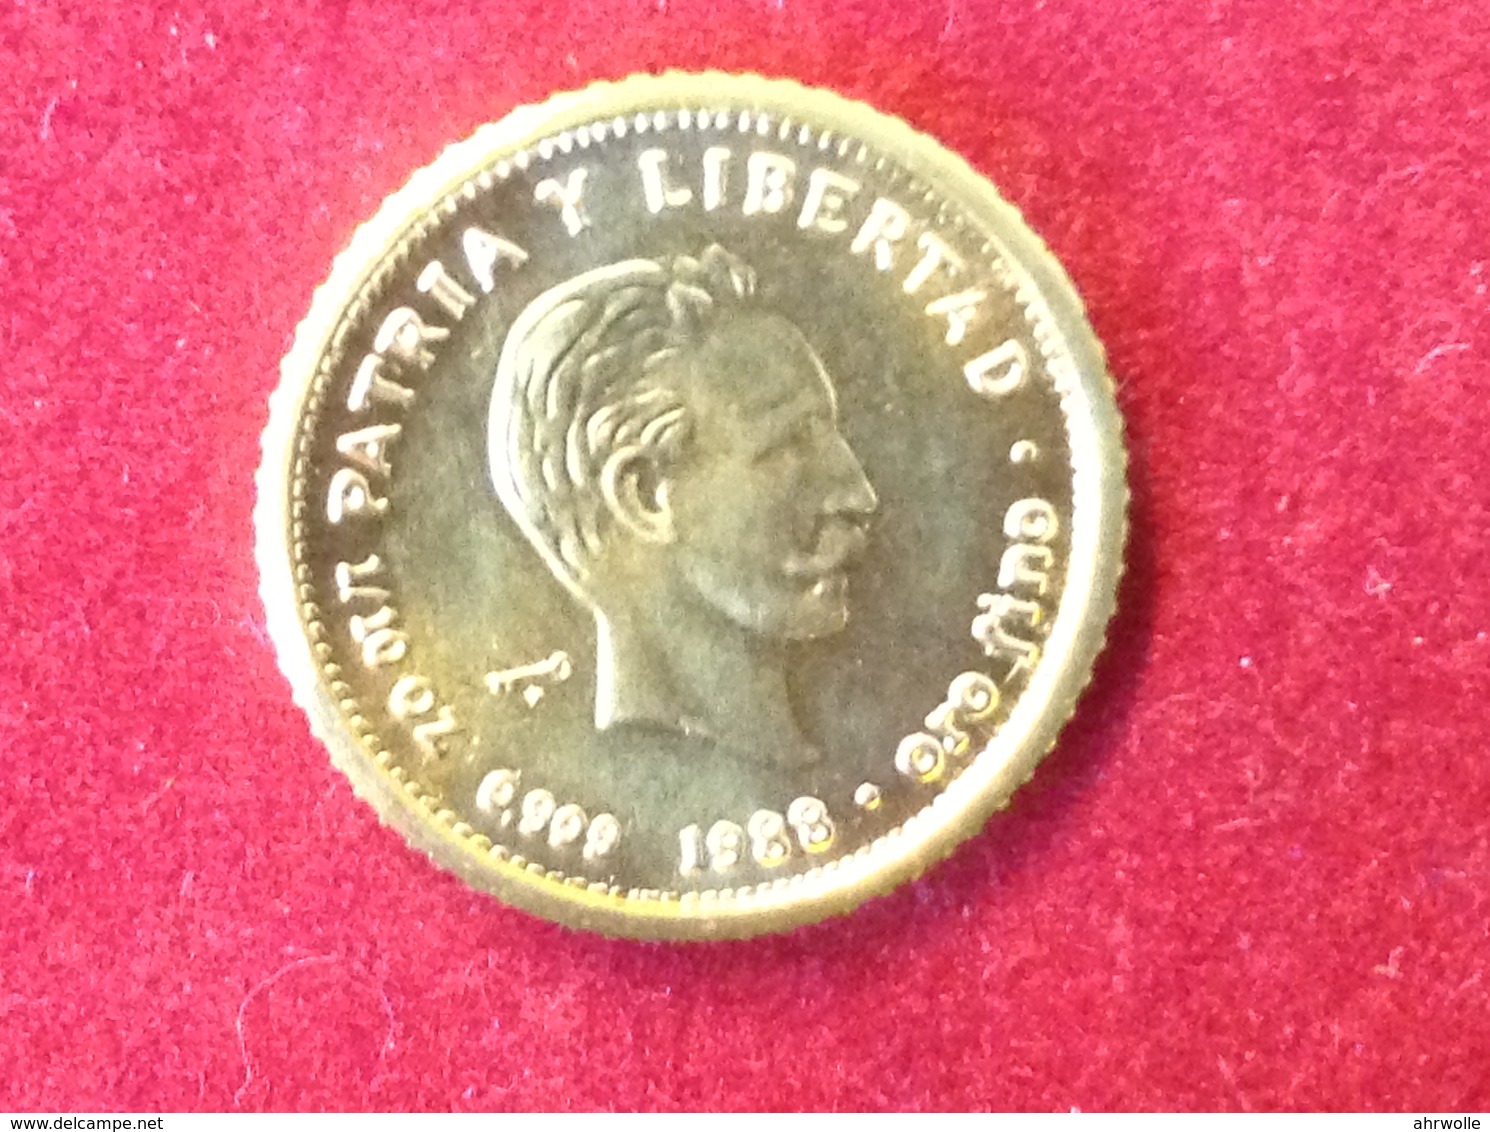 Goldmünze Cuba Kuba 1/10 OZ Patria Y Libertad Republica De Cuba 10 Pesos 1988 - Cuba